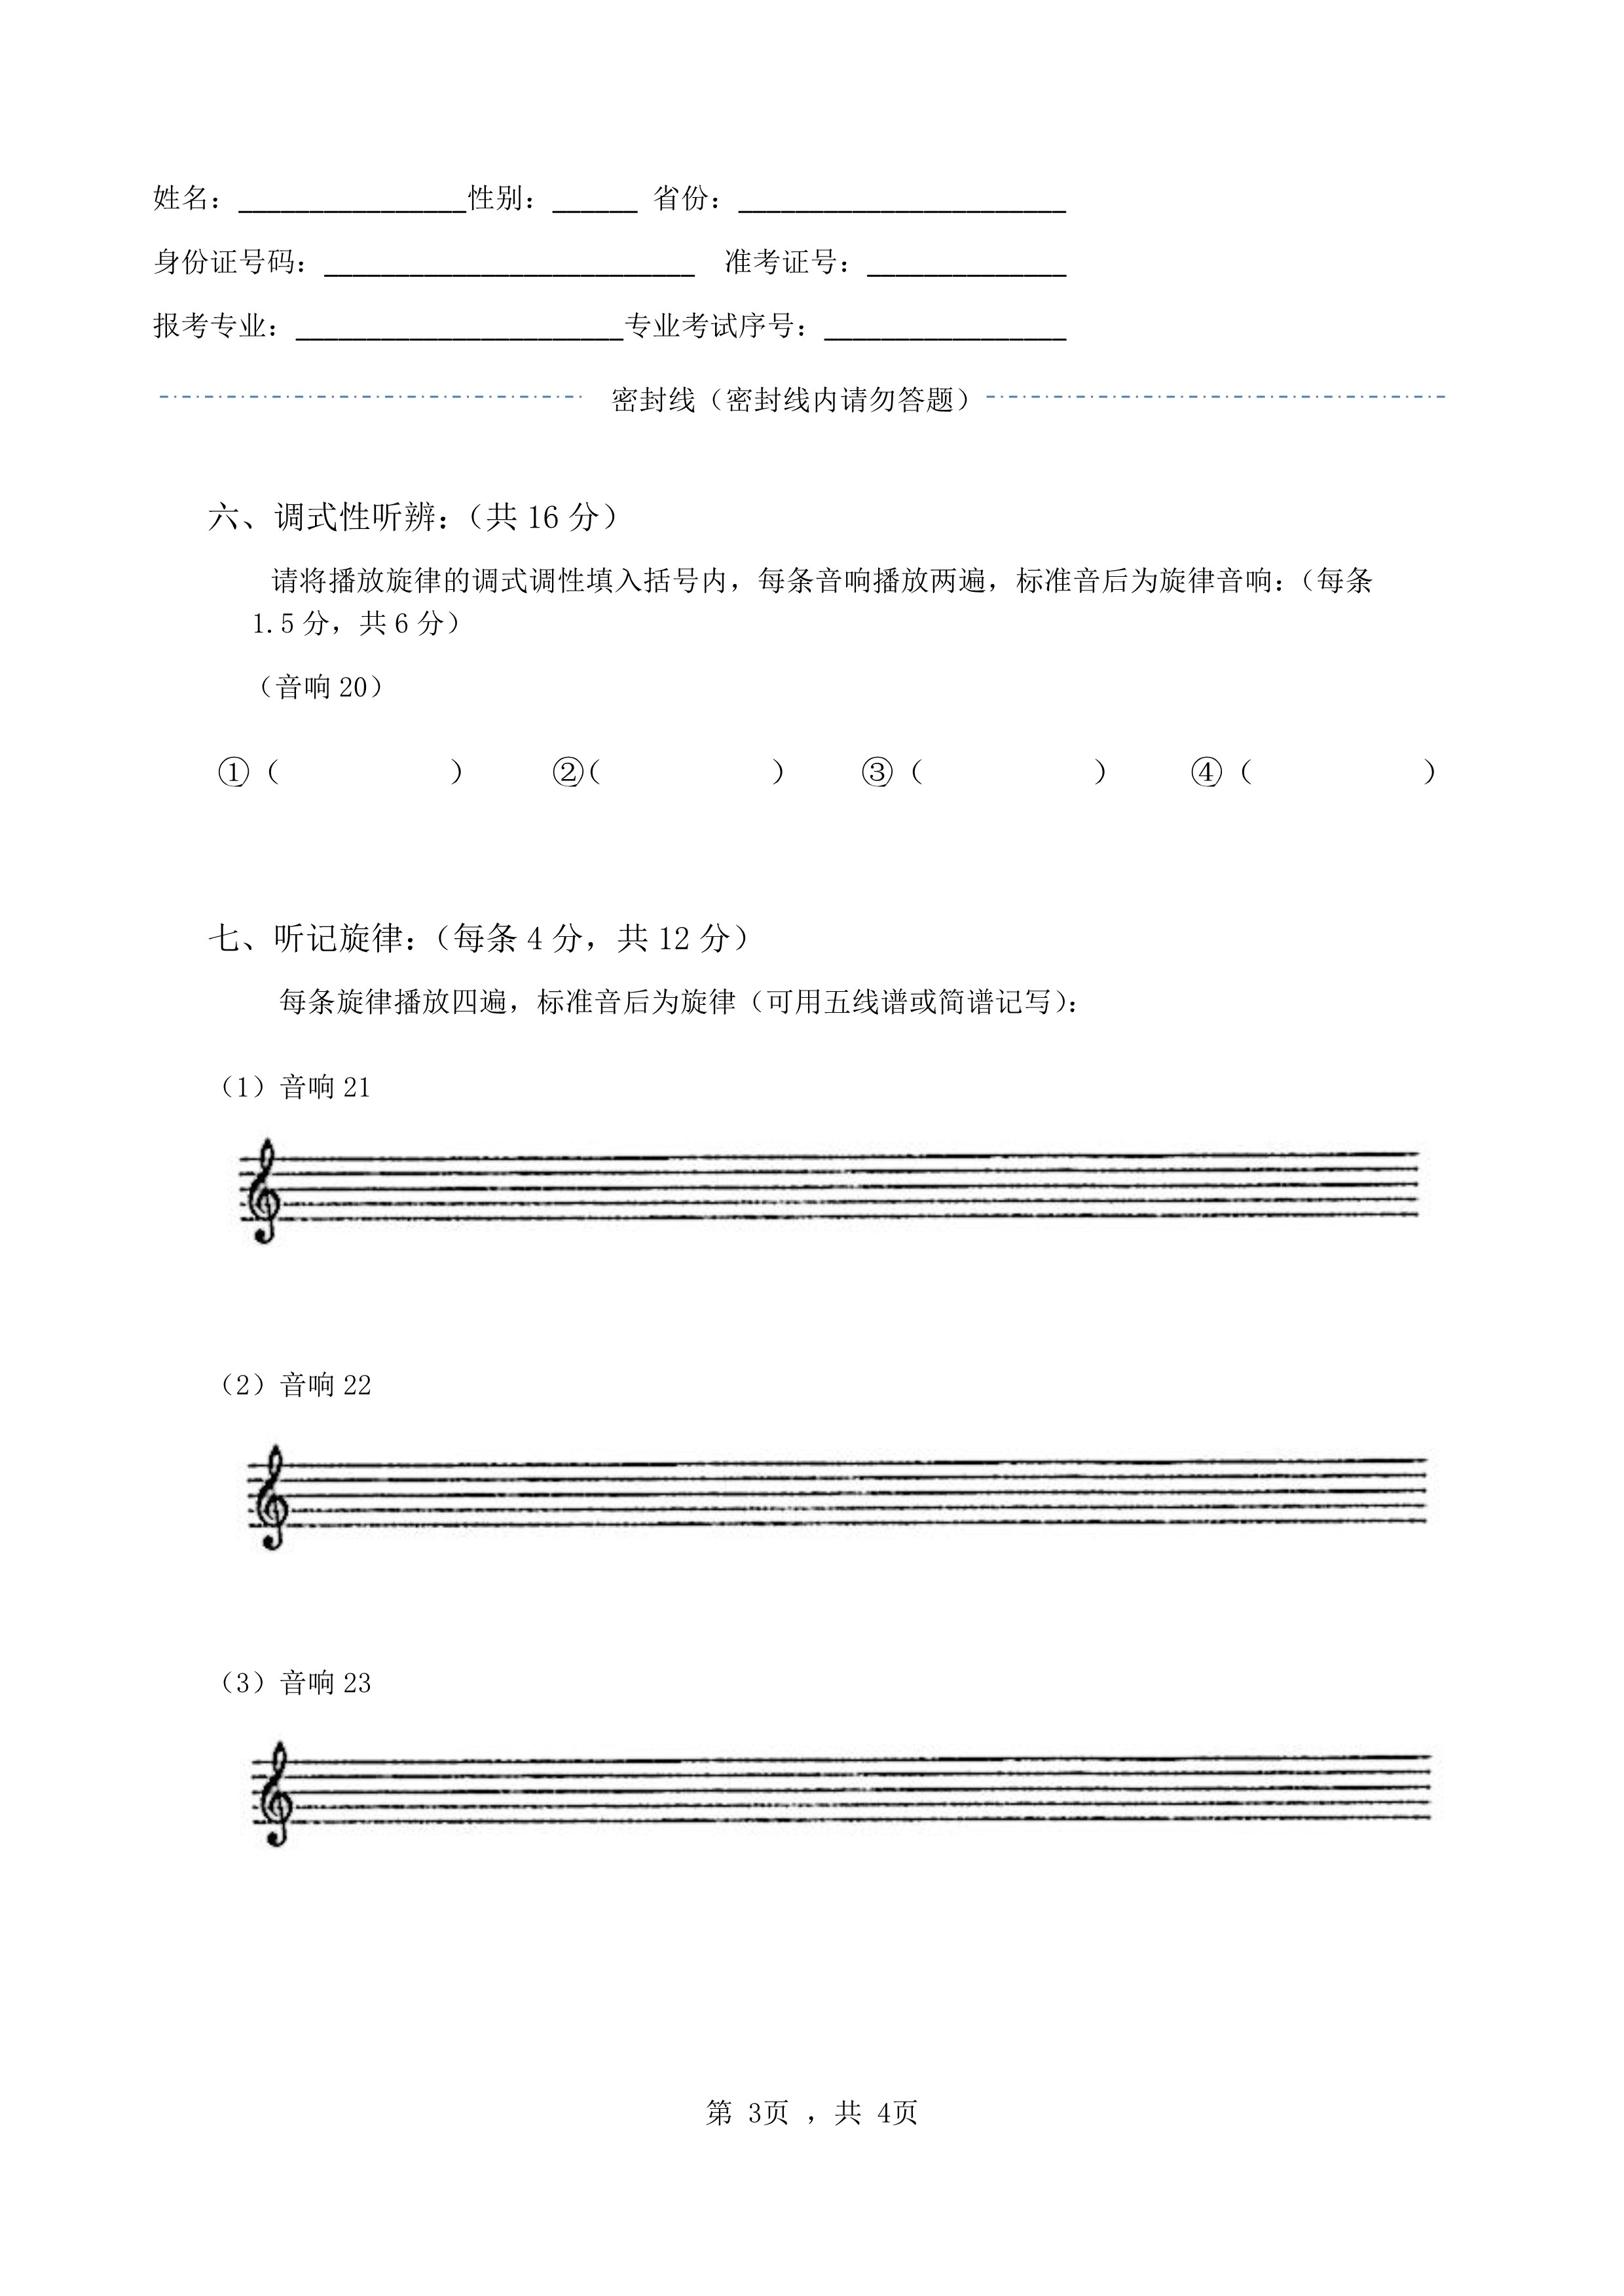 南京艺术学院2022年本科招生录音艺术专业《音响听辨》科目考试答题纸及草稿纸_3.jpg